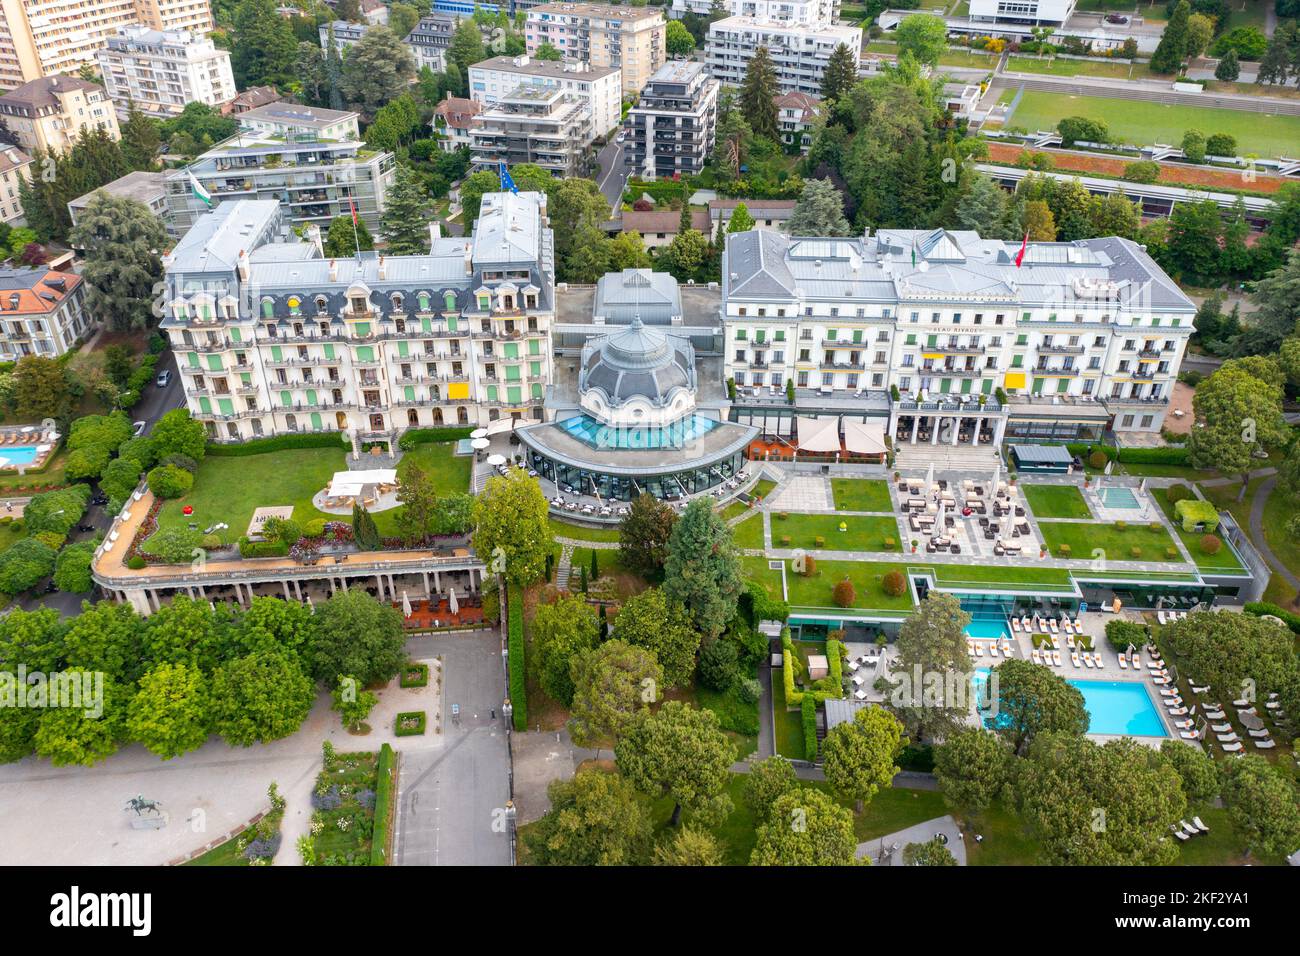 Hôtel Beau-Rivage Palace, Lausanne, Switzerland Stock Photo